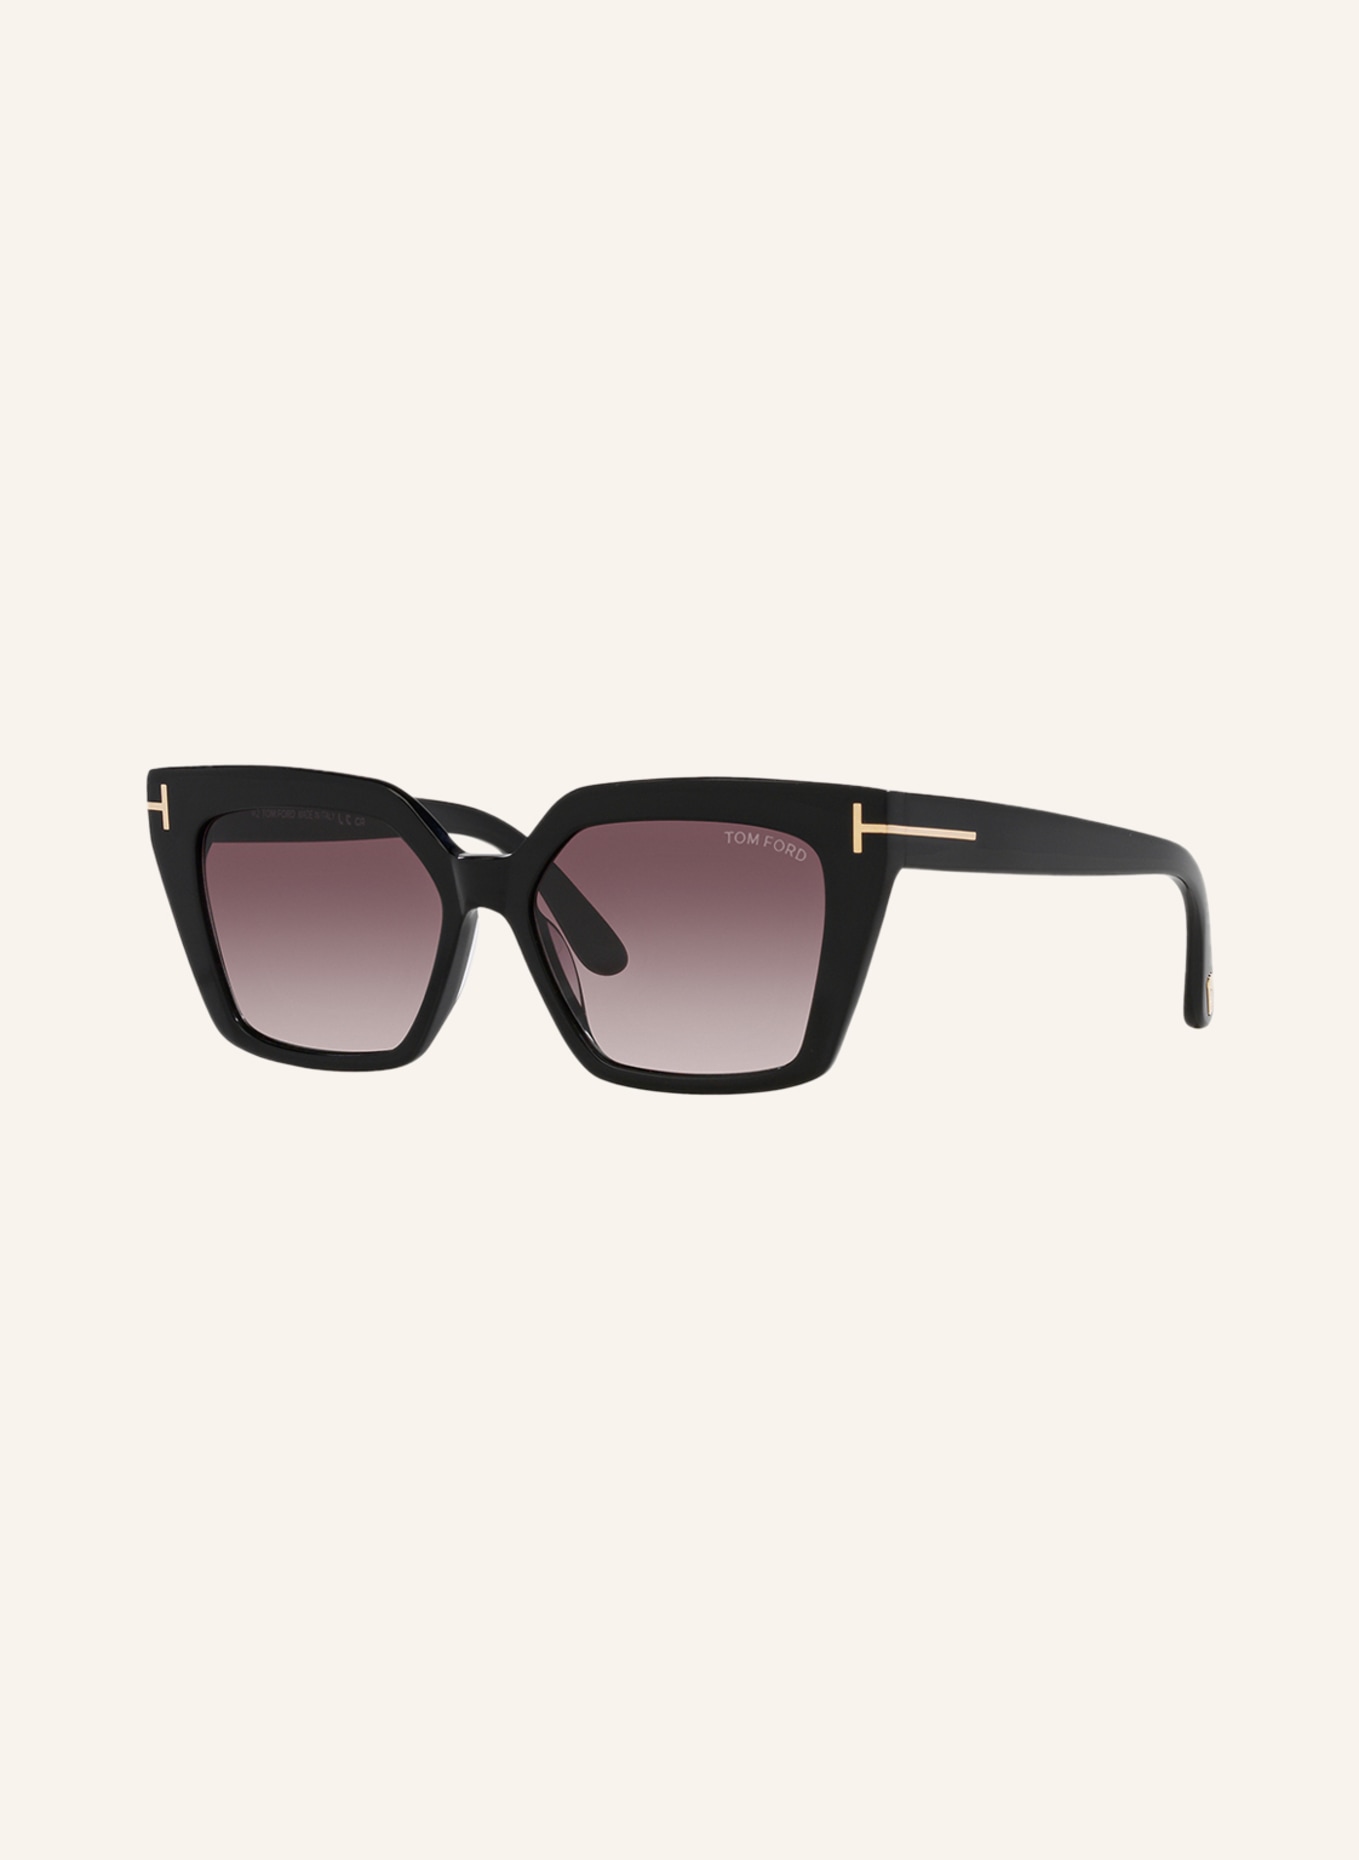 TOM FORD Sunglasses TR001637 WINONA, Color: 1330S6 - BLACK/ PURPLE MIRRORED (Image 1)